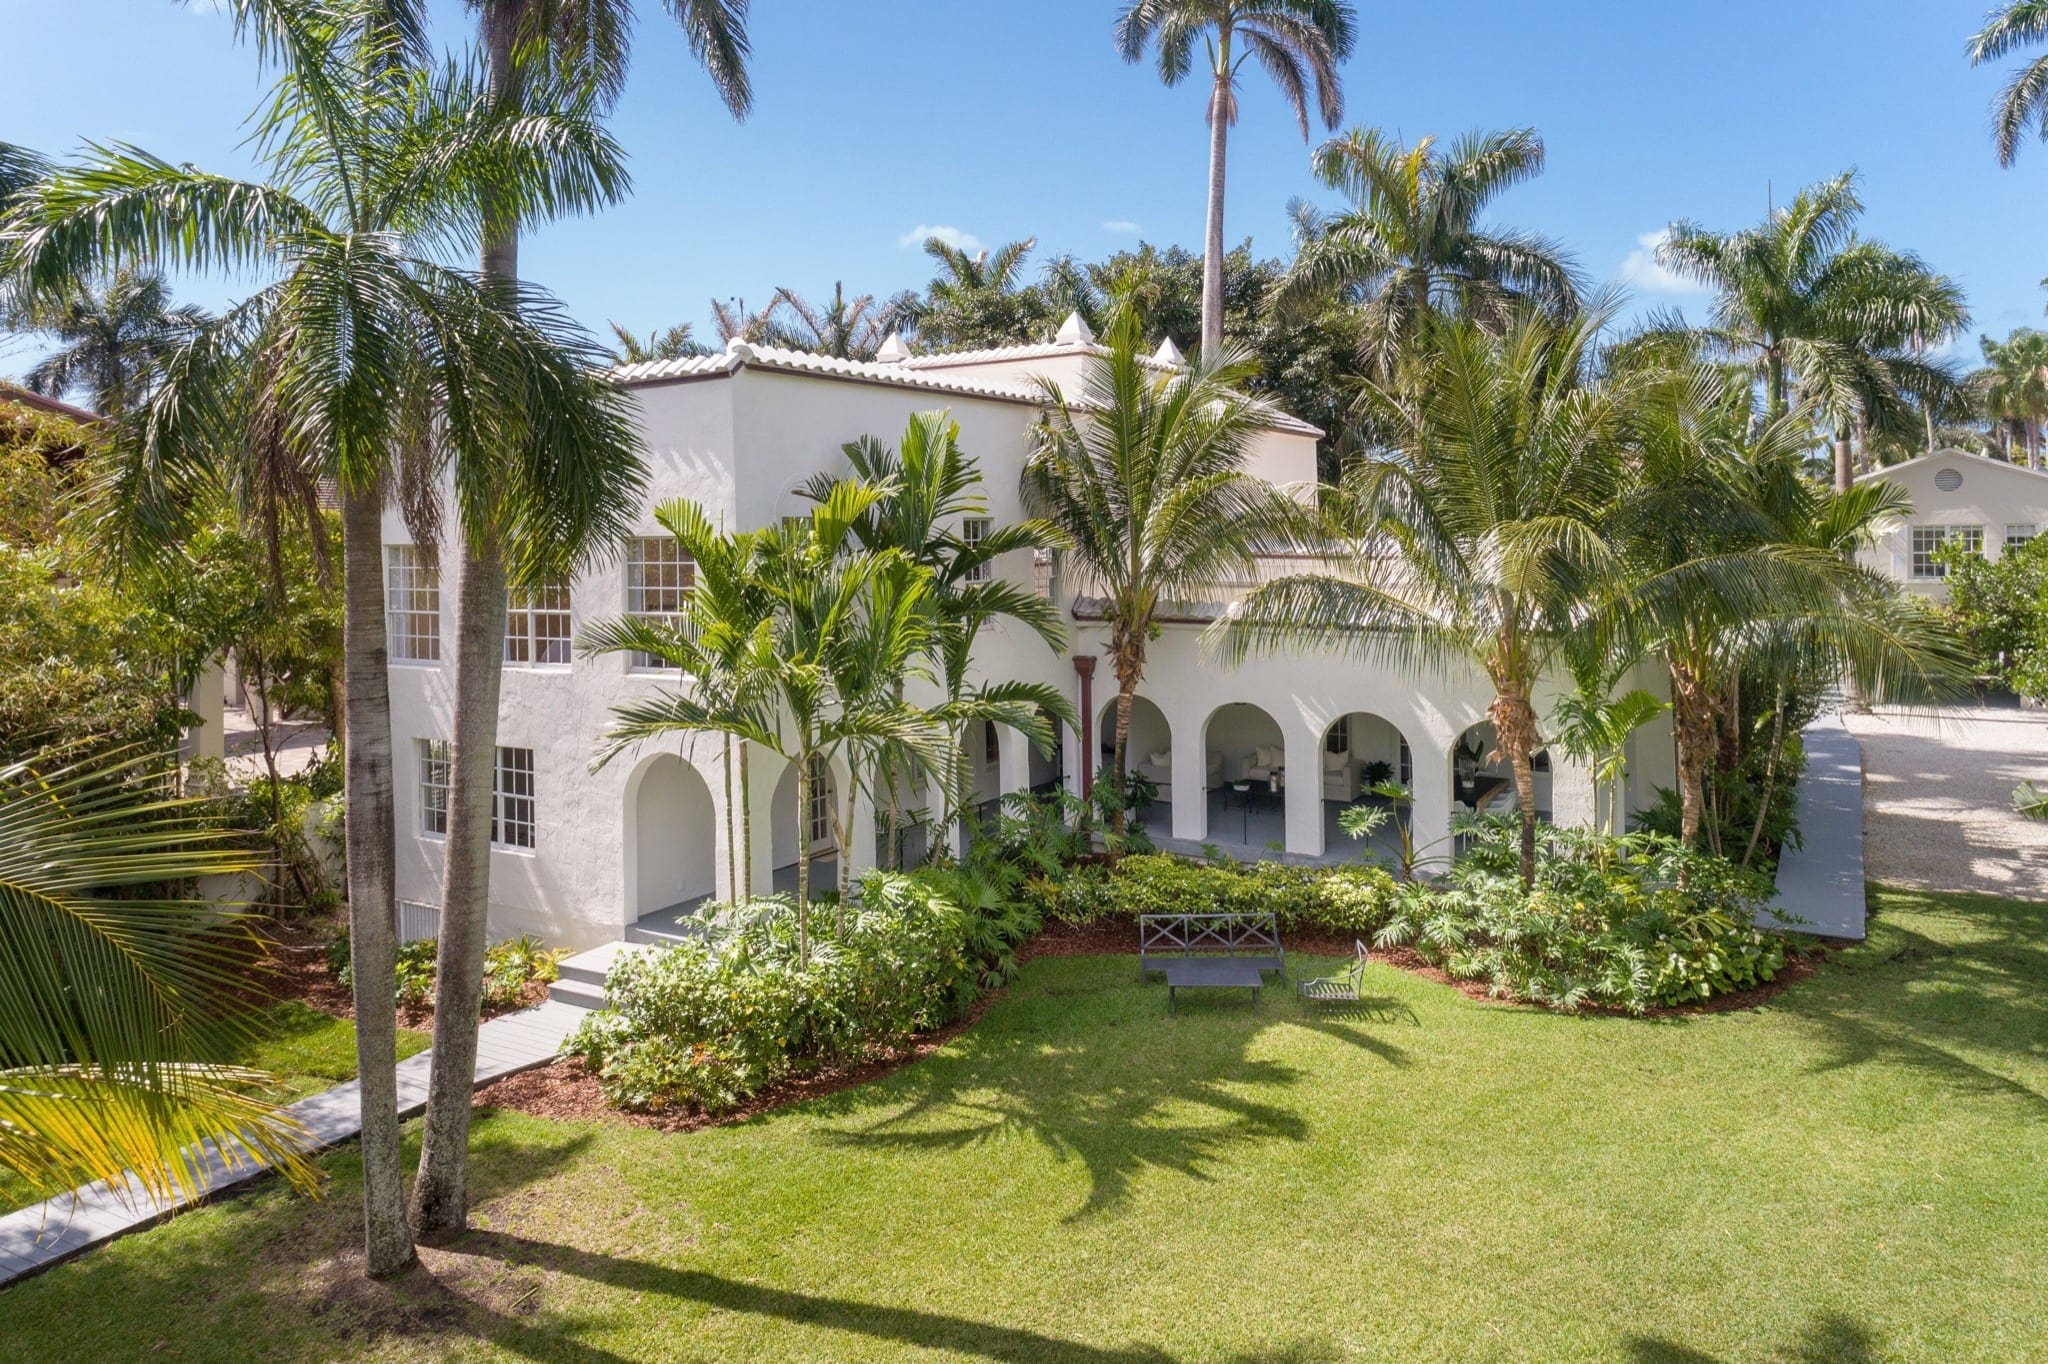 al capone2 1524159715 copy - Fosta reședință din Miami Beach a lui Al Capone, de vânzare pentru aproape 15 milioane de dolari